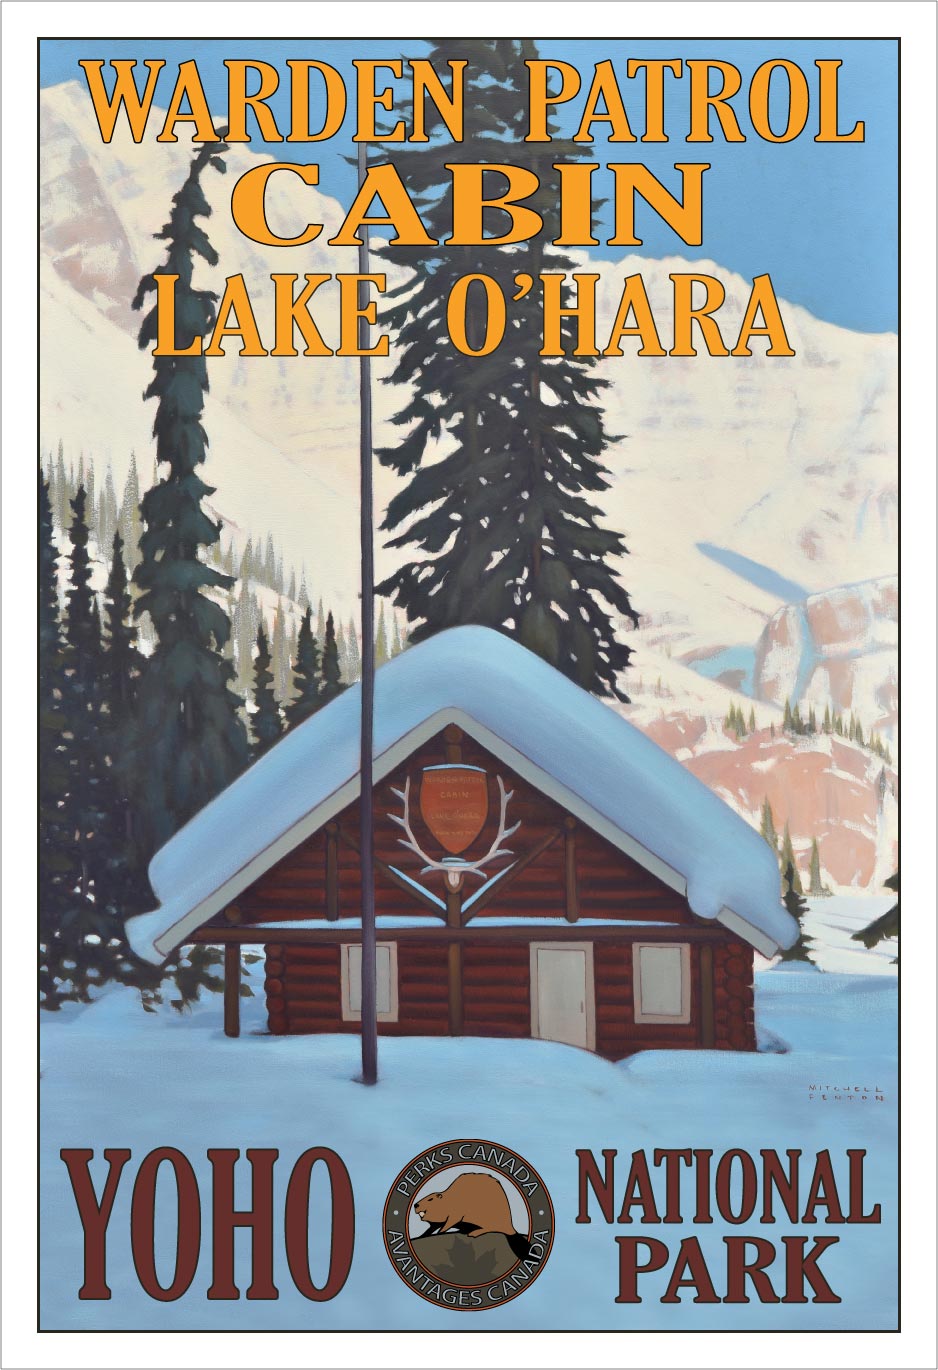 Warden Patrol Cabin - Lake O'Hara